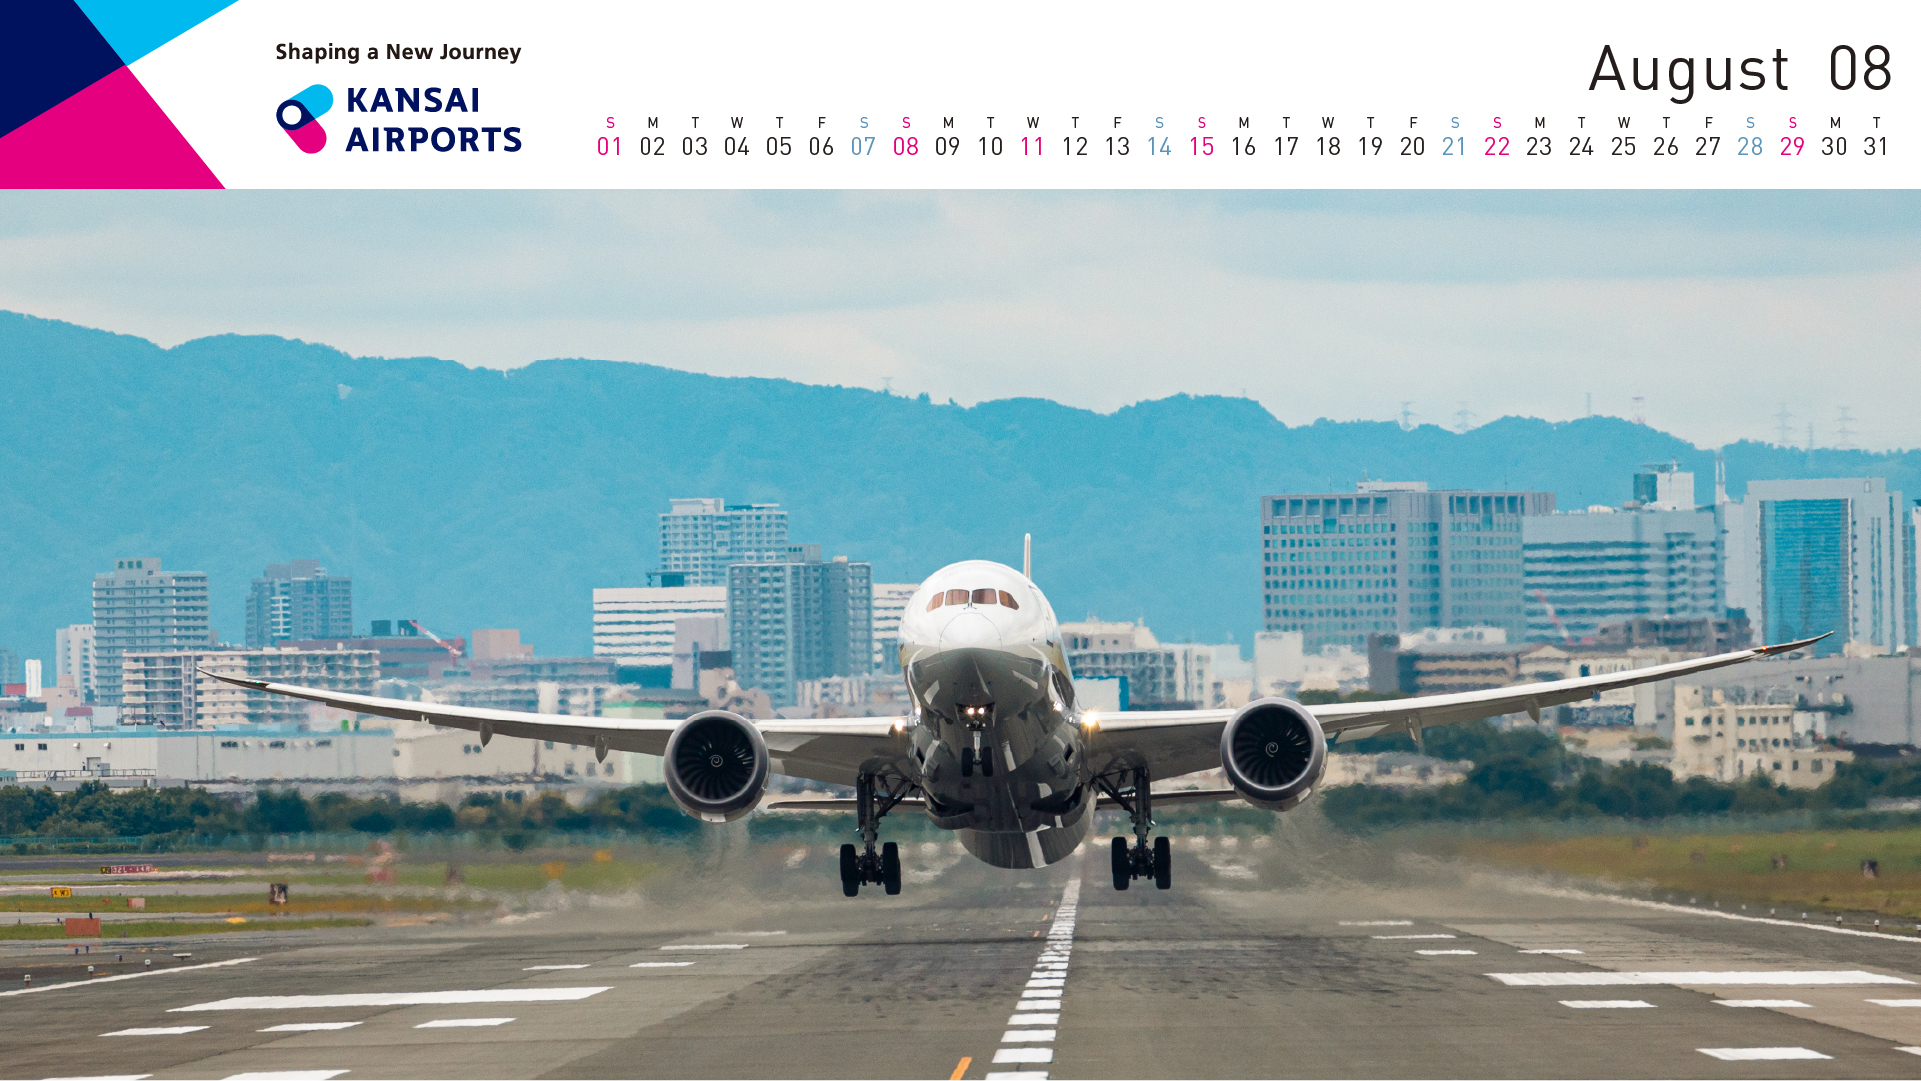 関西エアポート Pc スマホ用に 公式デジタルカレンダー21 を無料配信 環境に配慮し例年販売している紙カレンダーの製作は見送り Sky Budget スカイバジェット